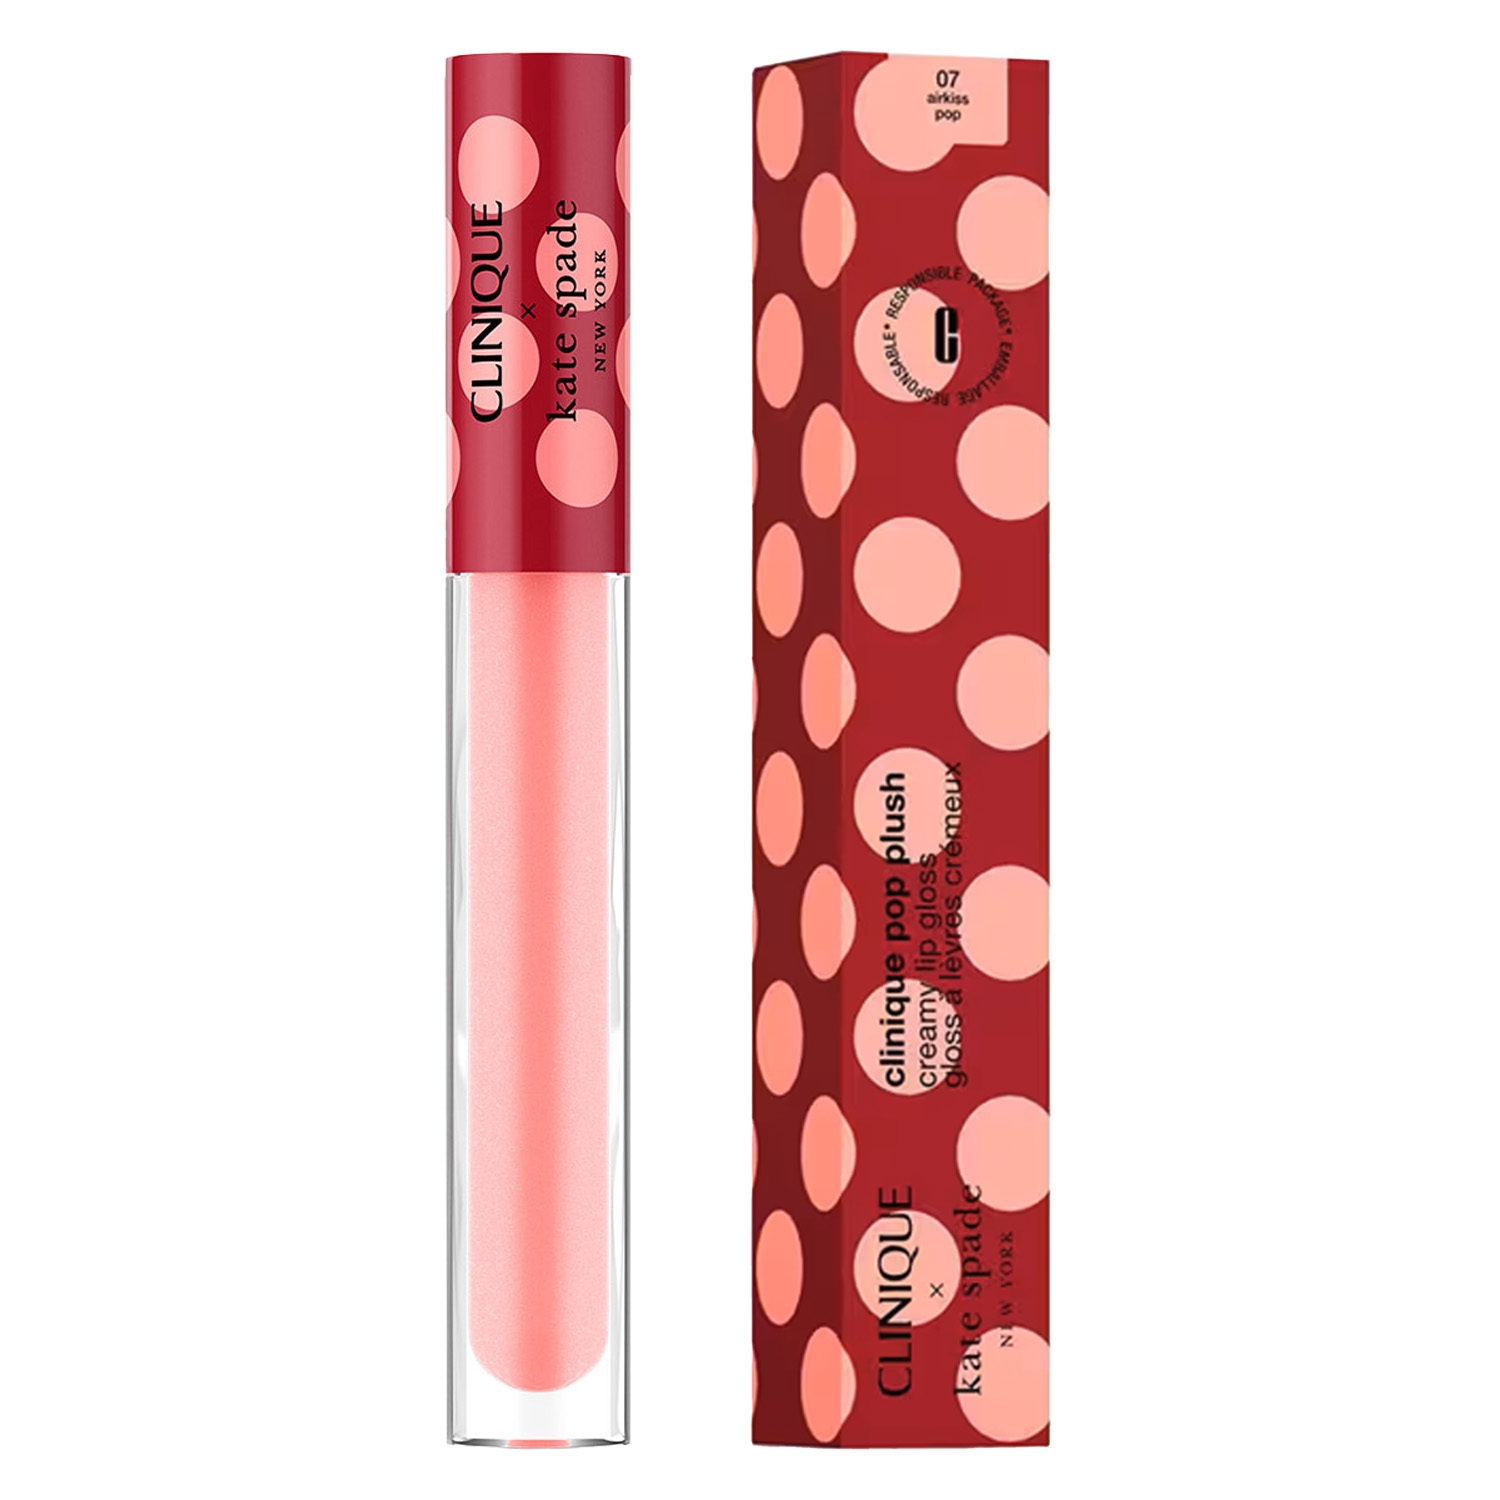 Produktbild von Clinique Lips - Decorated Kate Spade Pop Plush 07 Airkiss Pop